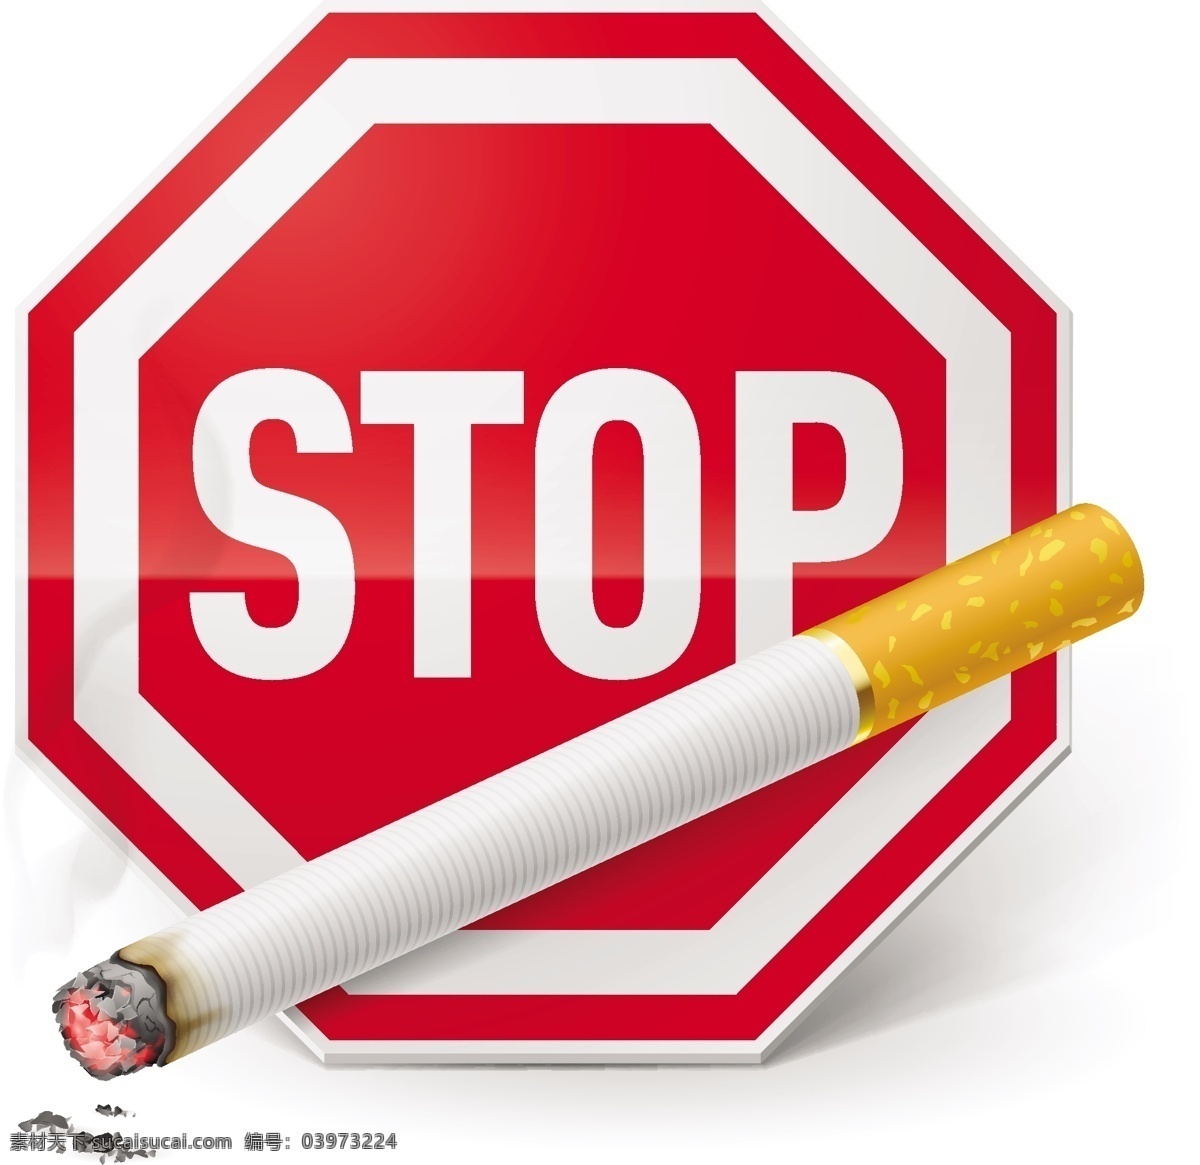 禁止 吸烟 标志 矢量 模板下载 禁烟标志 禁止吸烟 吸烟有害健康 禁烟公益广告 生活百科 矢量素材 白色